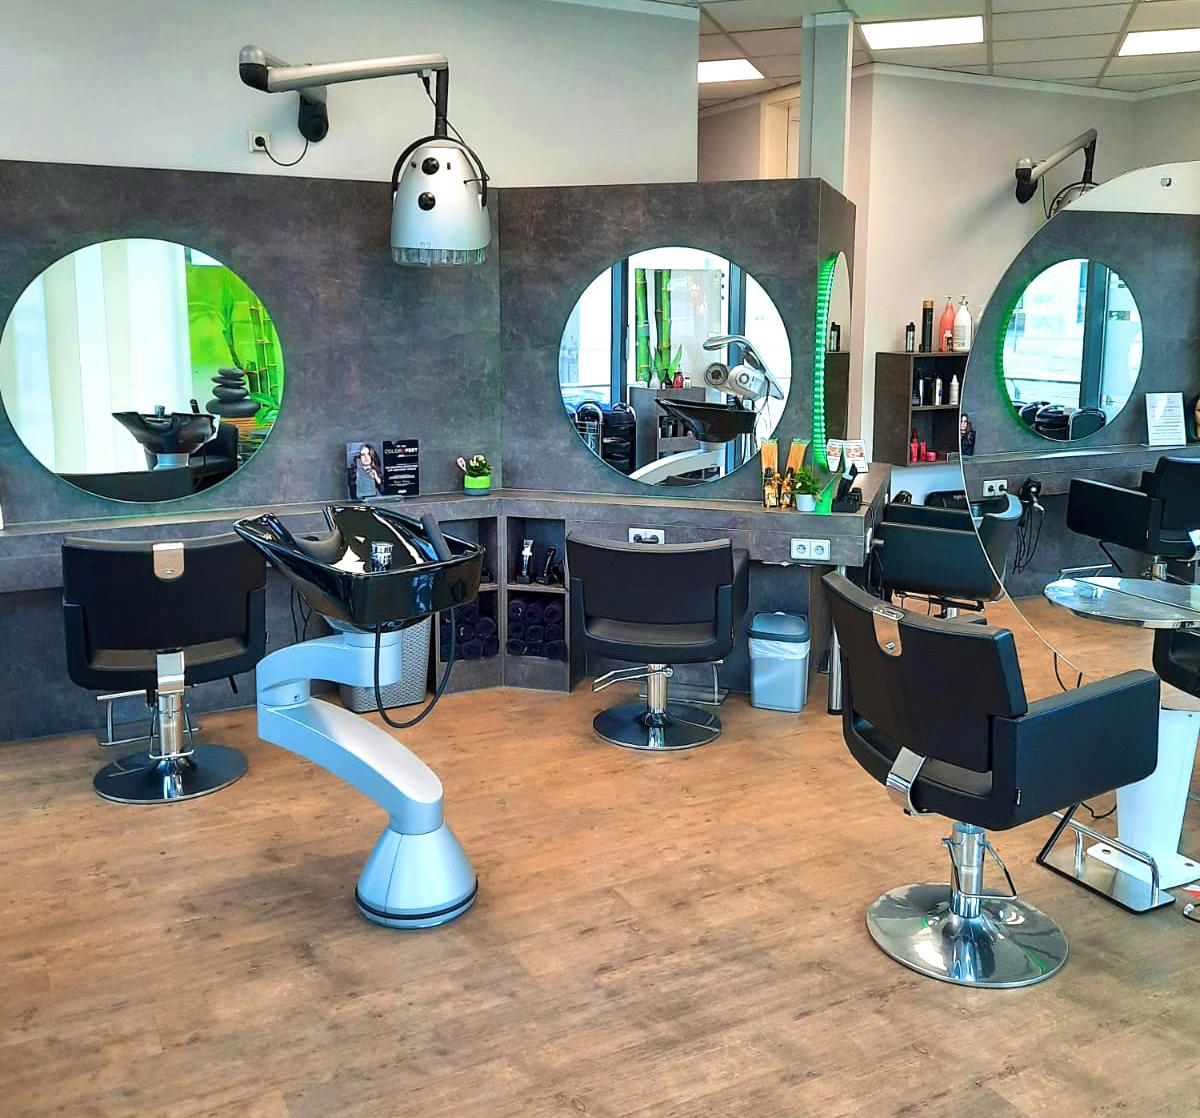 Salon Beauty – Ihr Friseur in Chemnitz, Zwickauer Straße 452 in Chemnitz